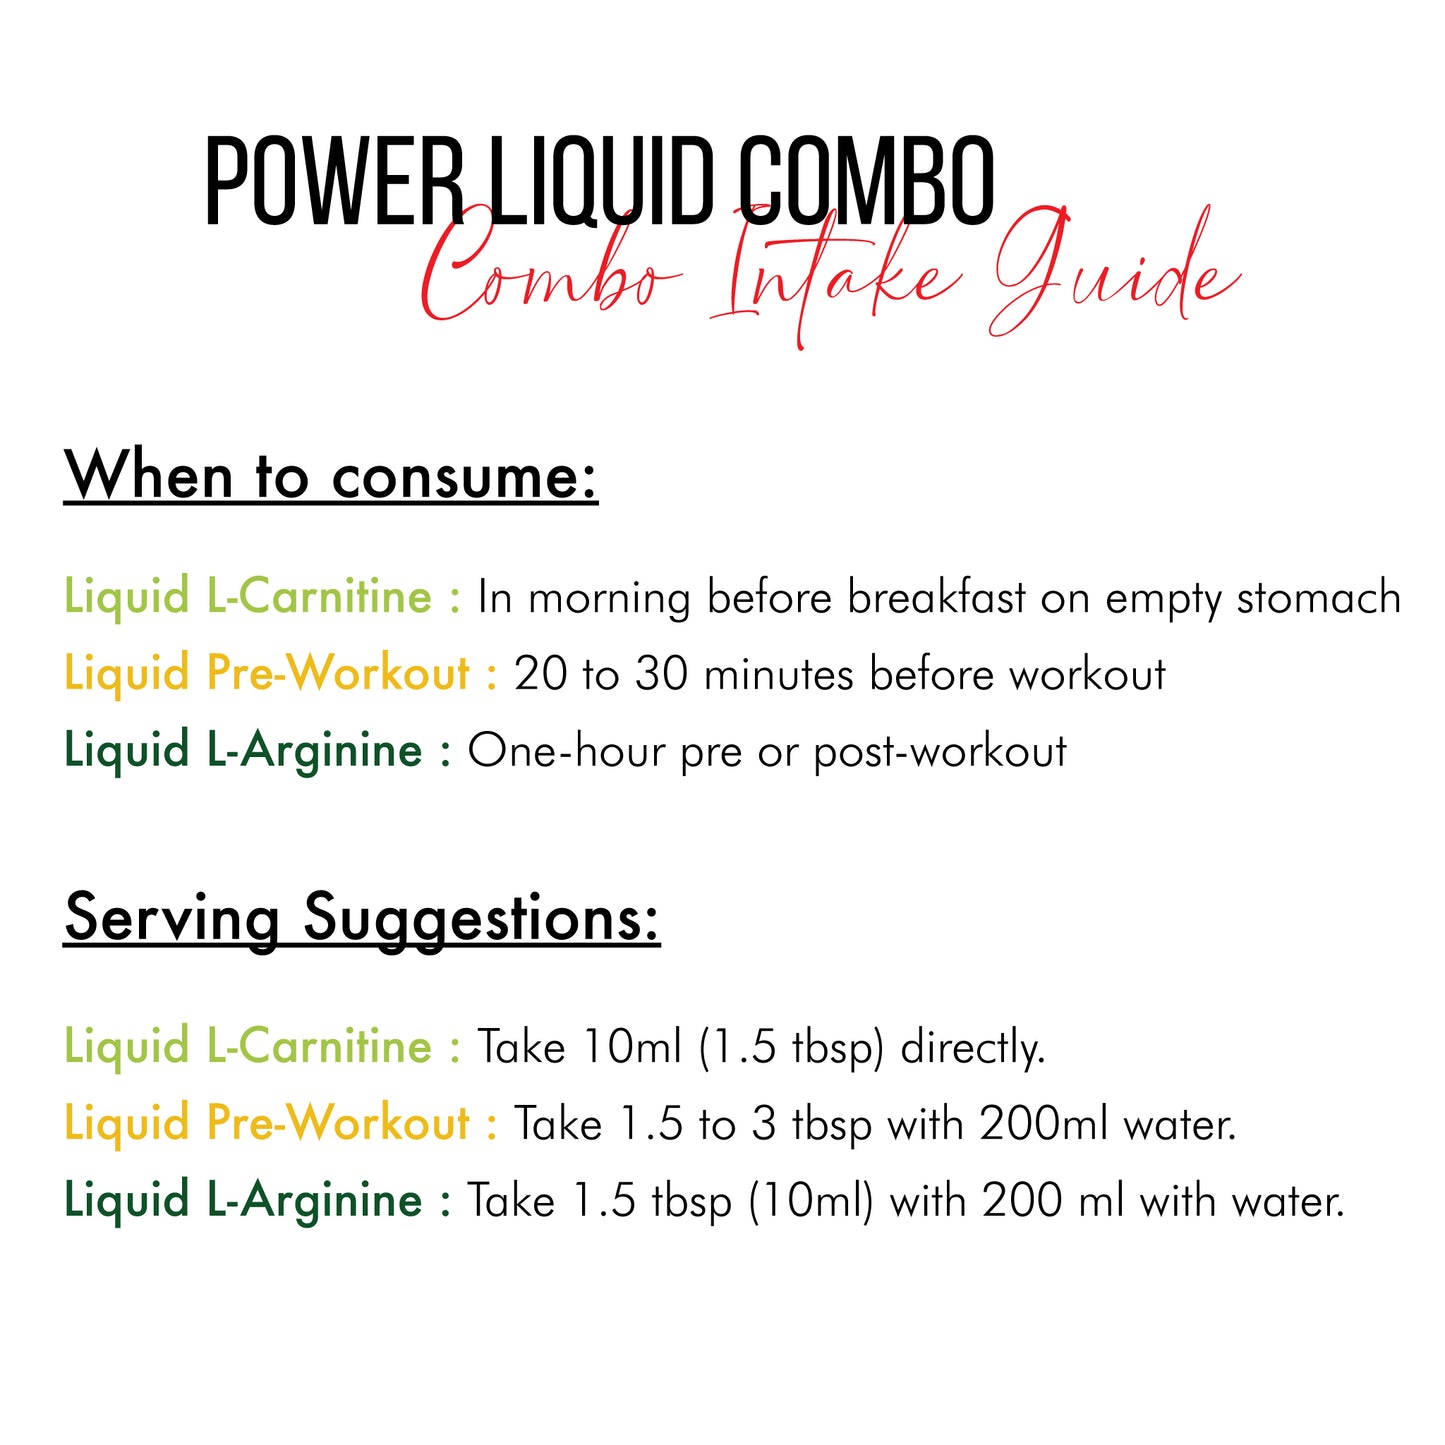 Power Liquid Combo - Nutrabox India